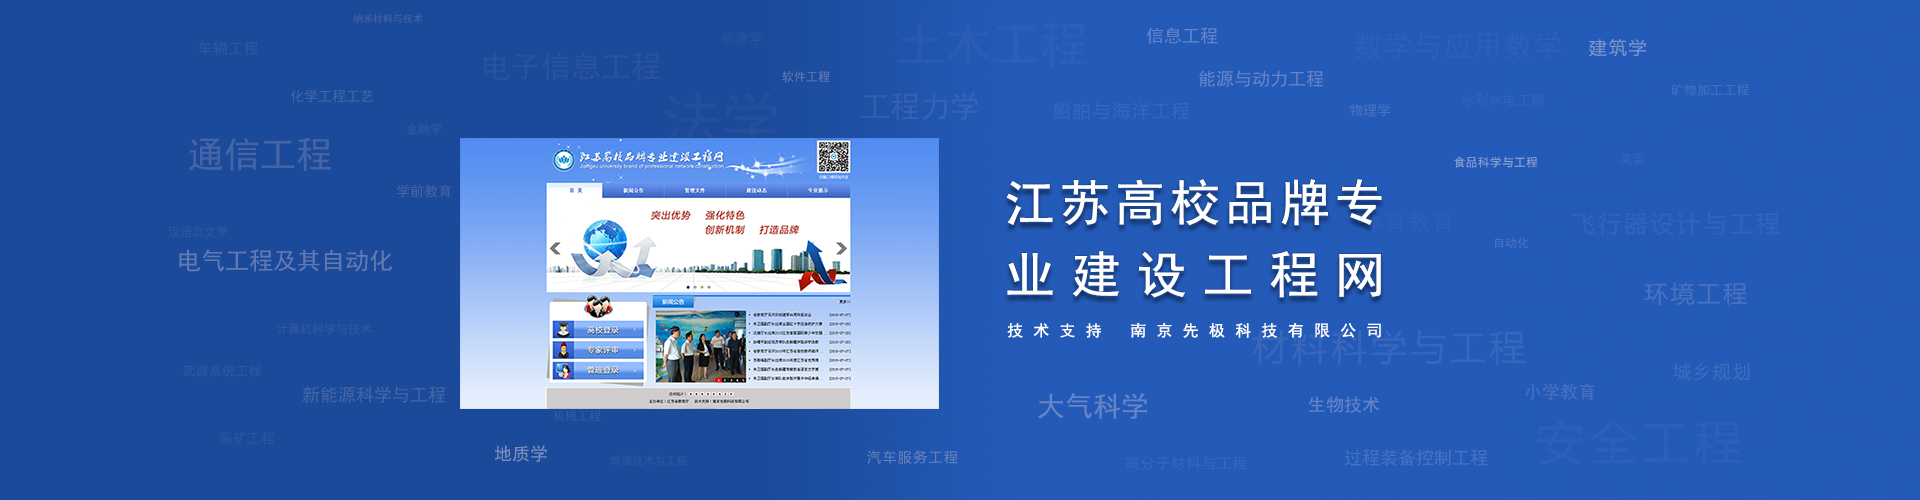 关于当前产品1198彩世界平台·(中国)官方网站的成功案例等相关图片